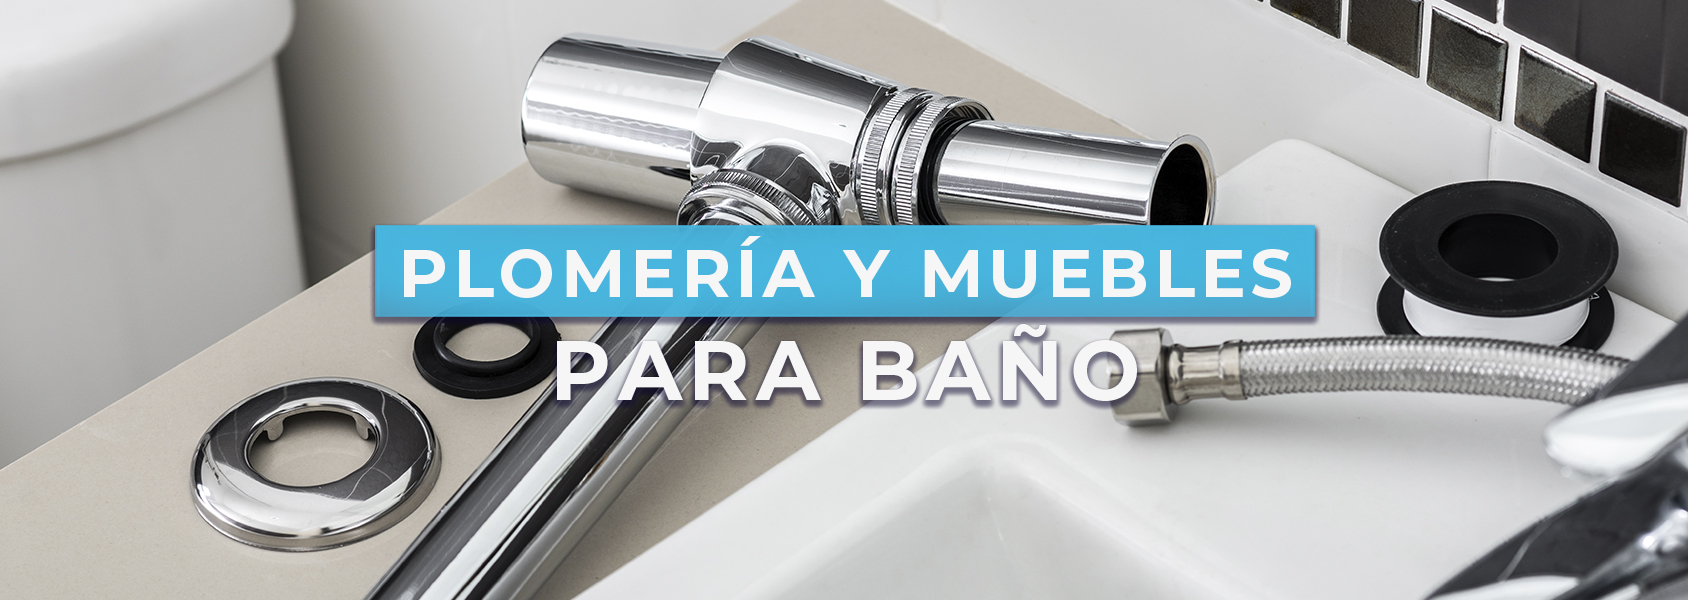 PLOMERIA_Y_MUEBLES-PARA-BANIO